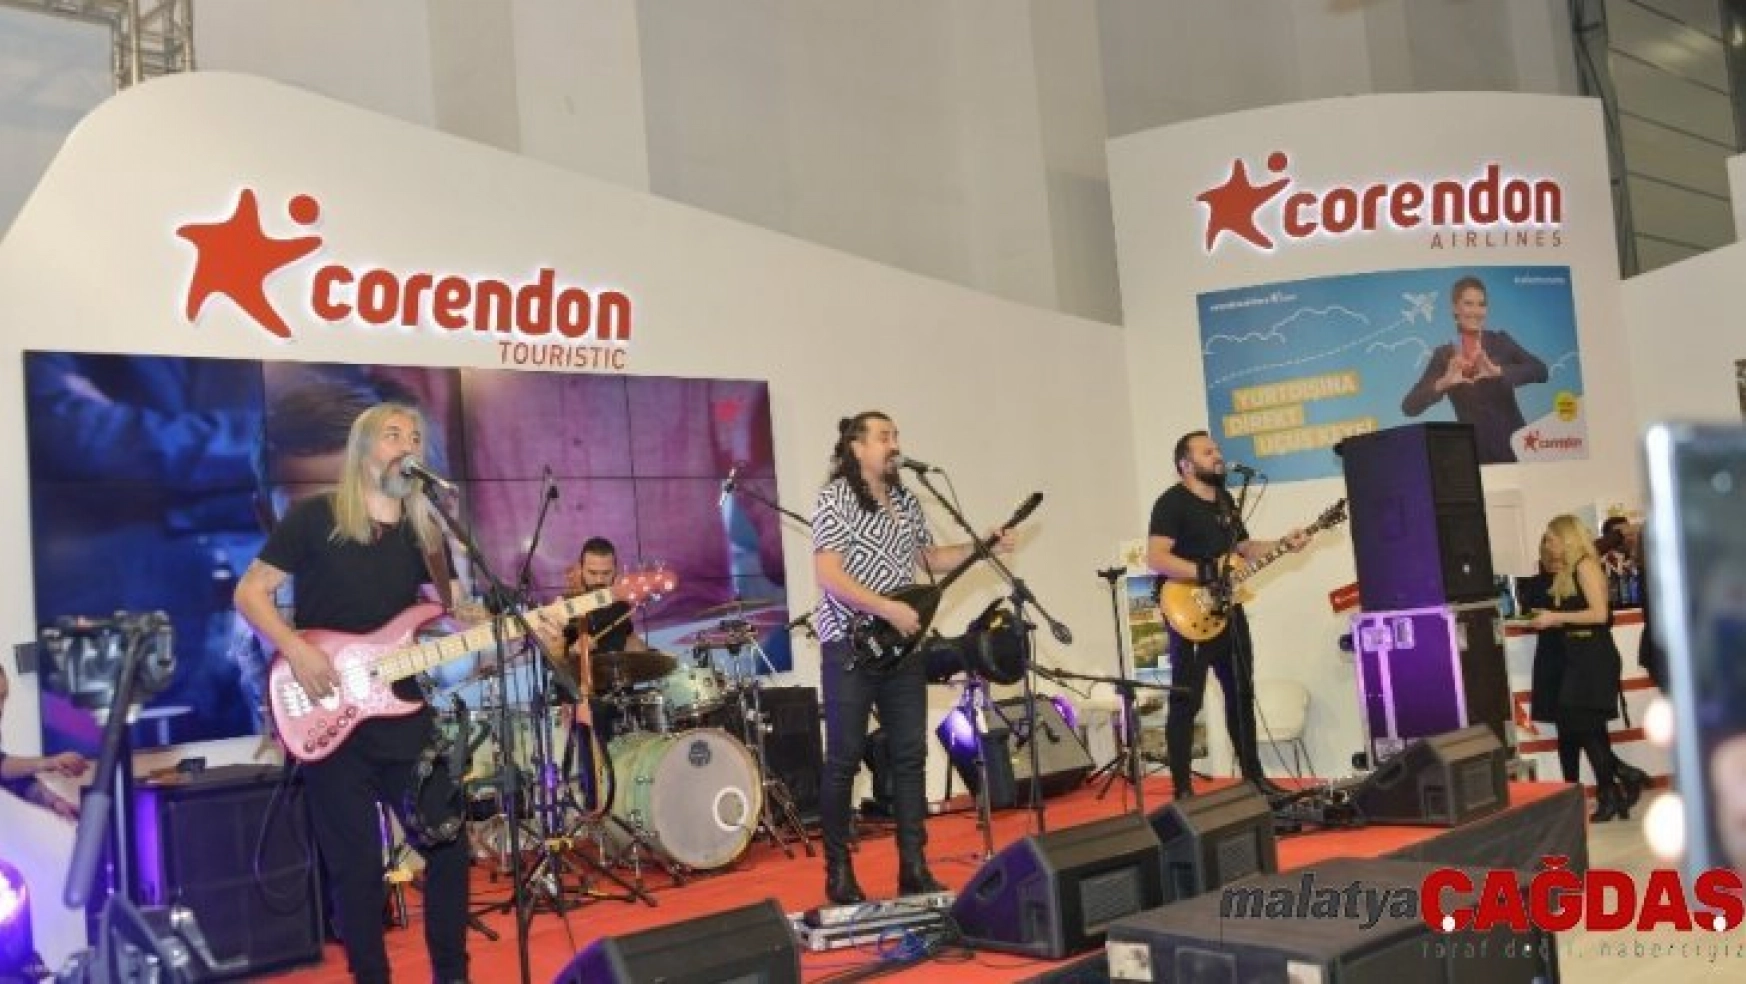 Corendon Airlines'tan Travel Turkey İzmir'in ilk gününde konser sürprizi